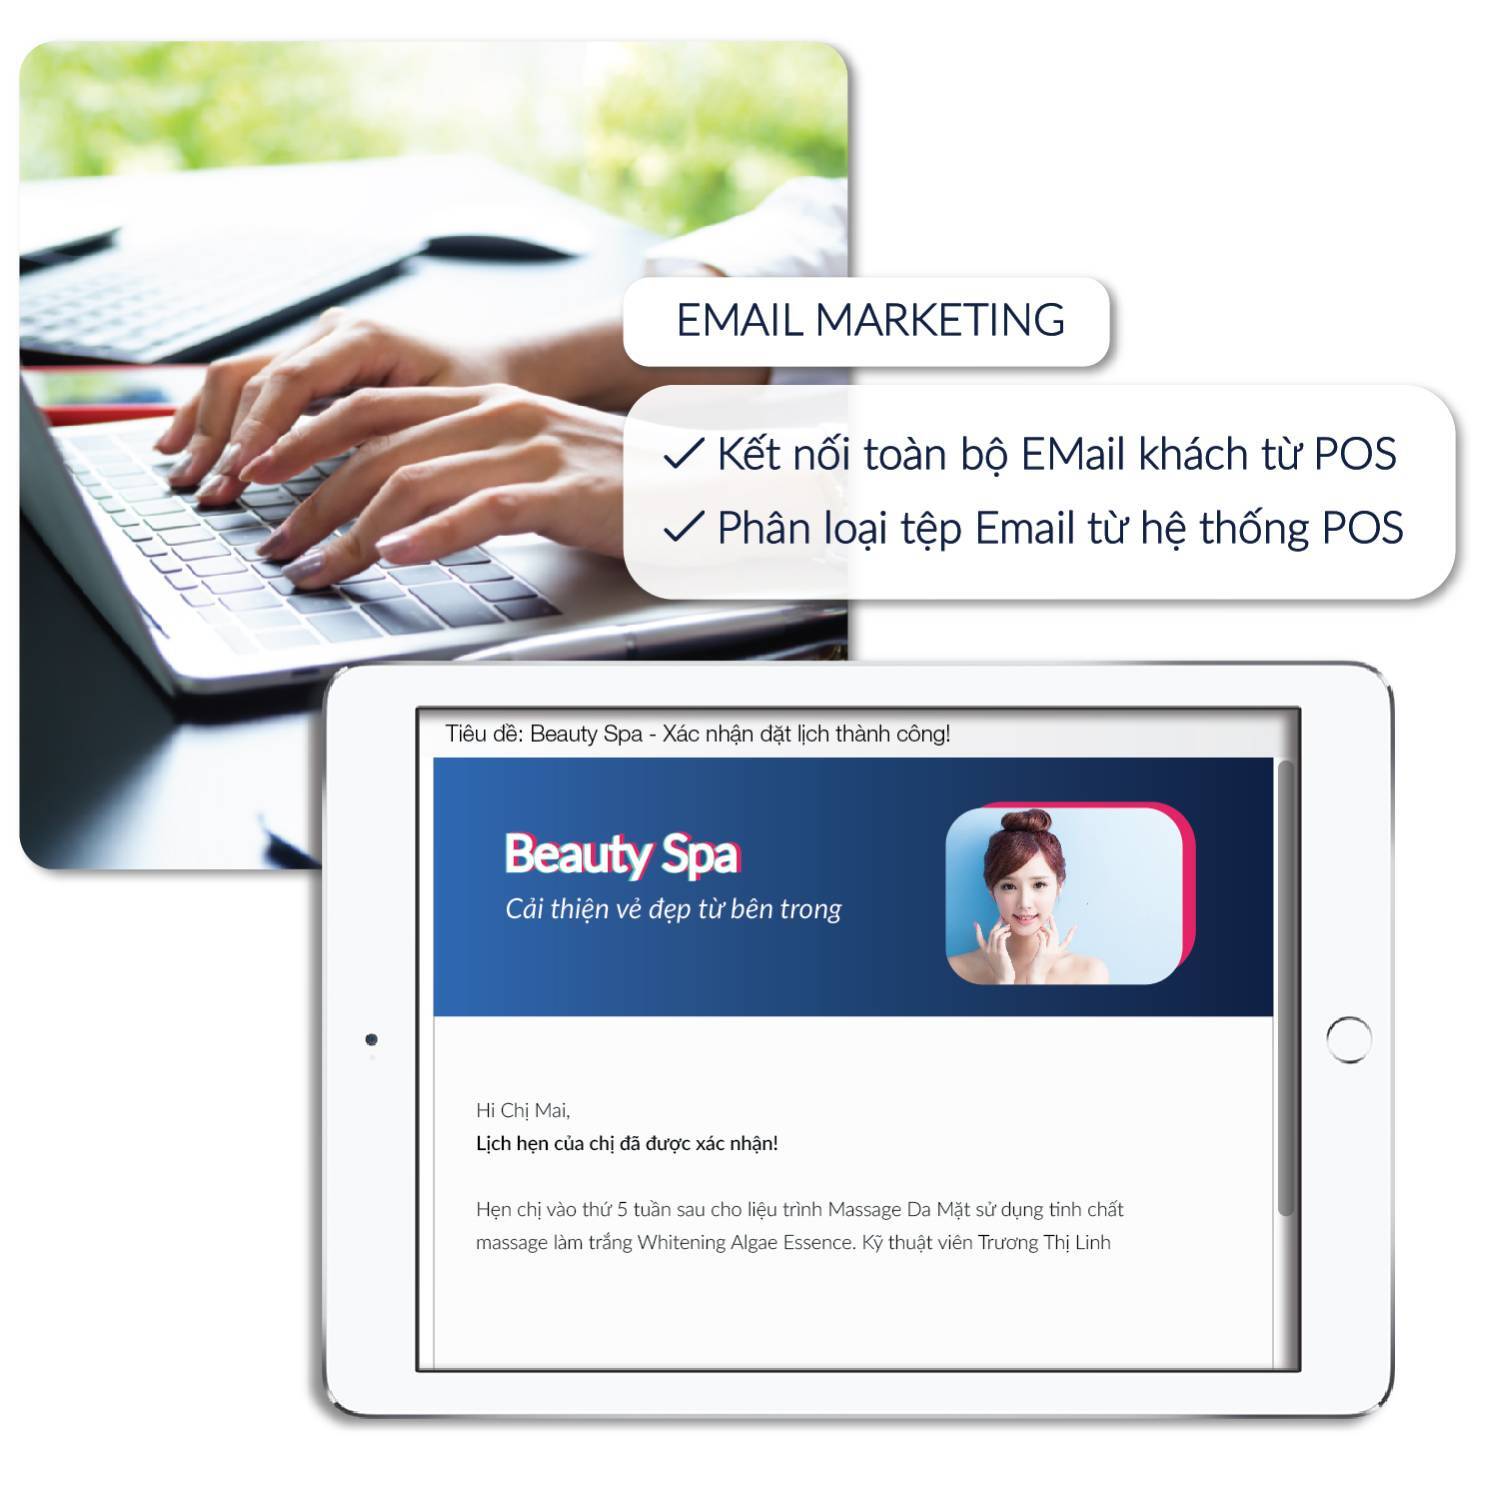 Email marketing khách hàng